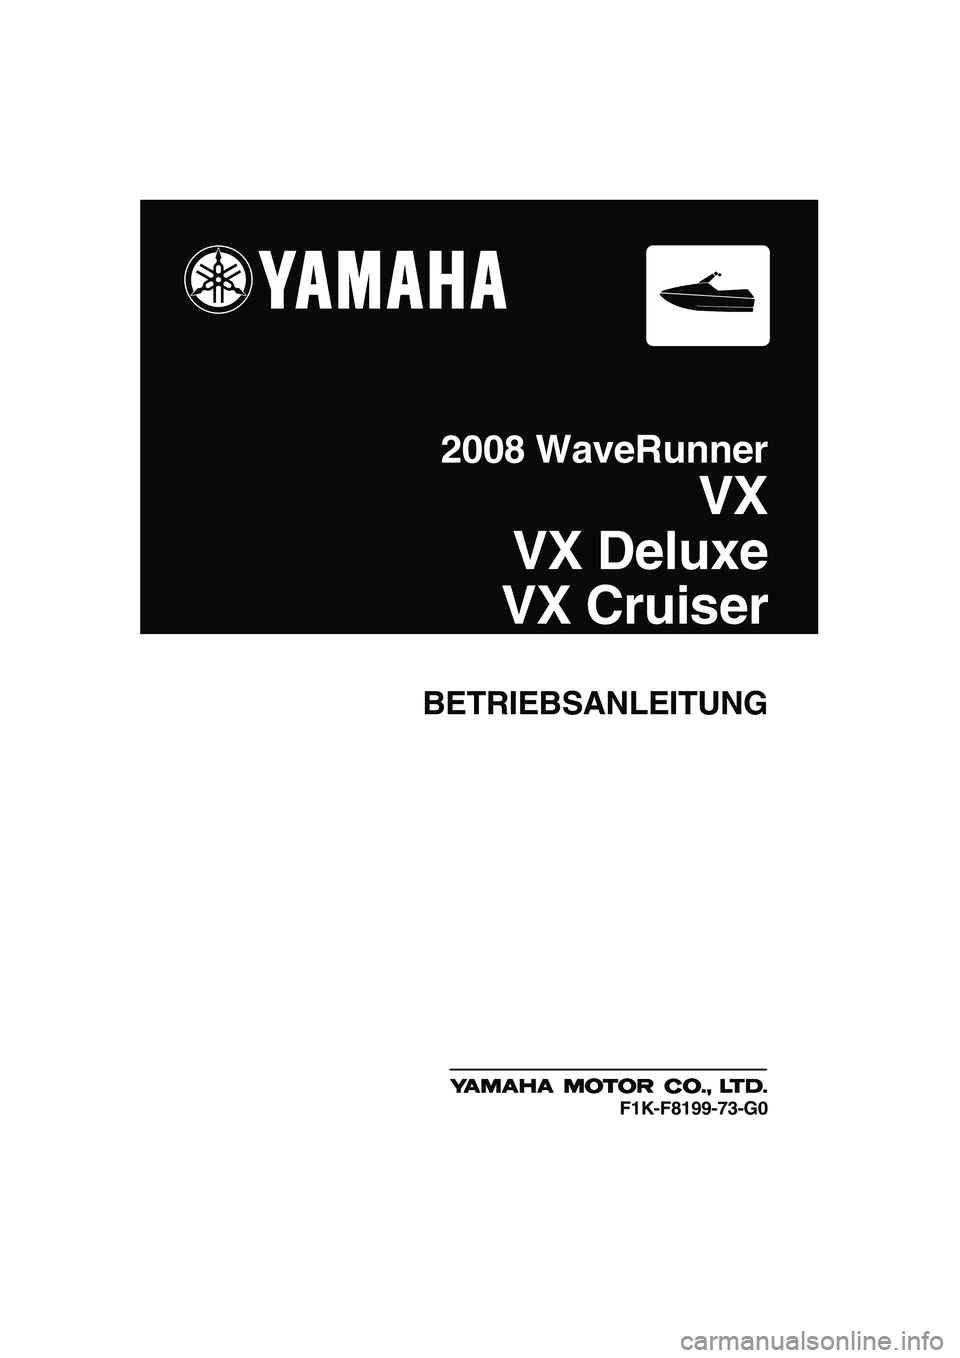 YAMAHA VX 2008  Betriebsanleitungen (in German) BETRIEBSANLEITUNG
2008 WaveRunner
VX
VX Deluxe
VX Cruiser
F1K-F8199-73-G0
UF1K73G0.book  Page 1  Tuesday, July 10, 2007  9:21 PM 